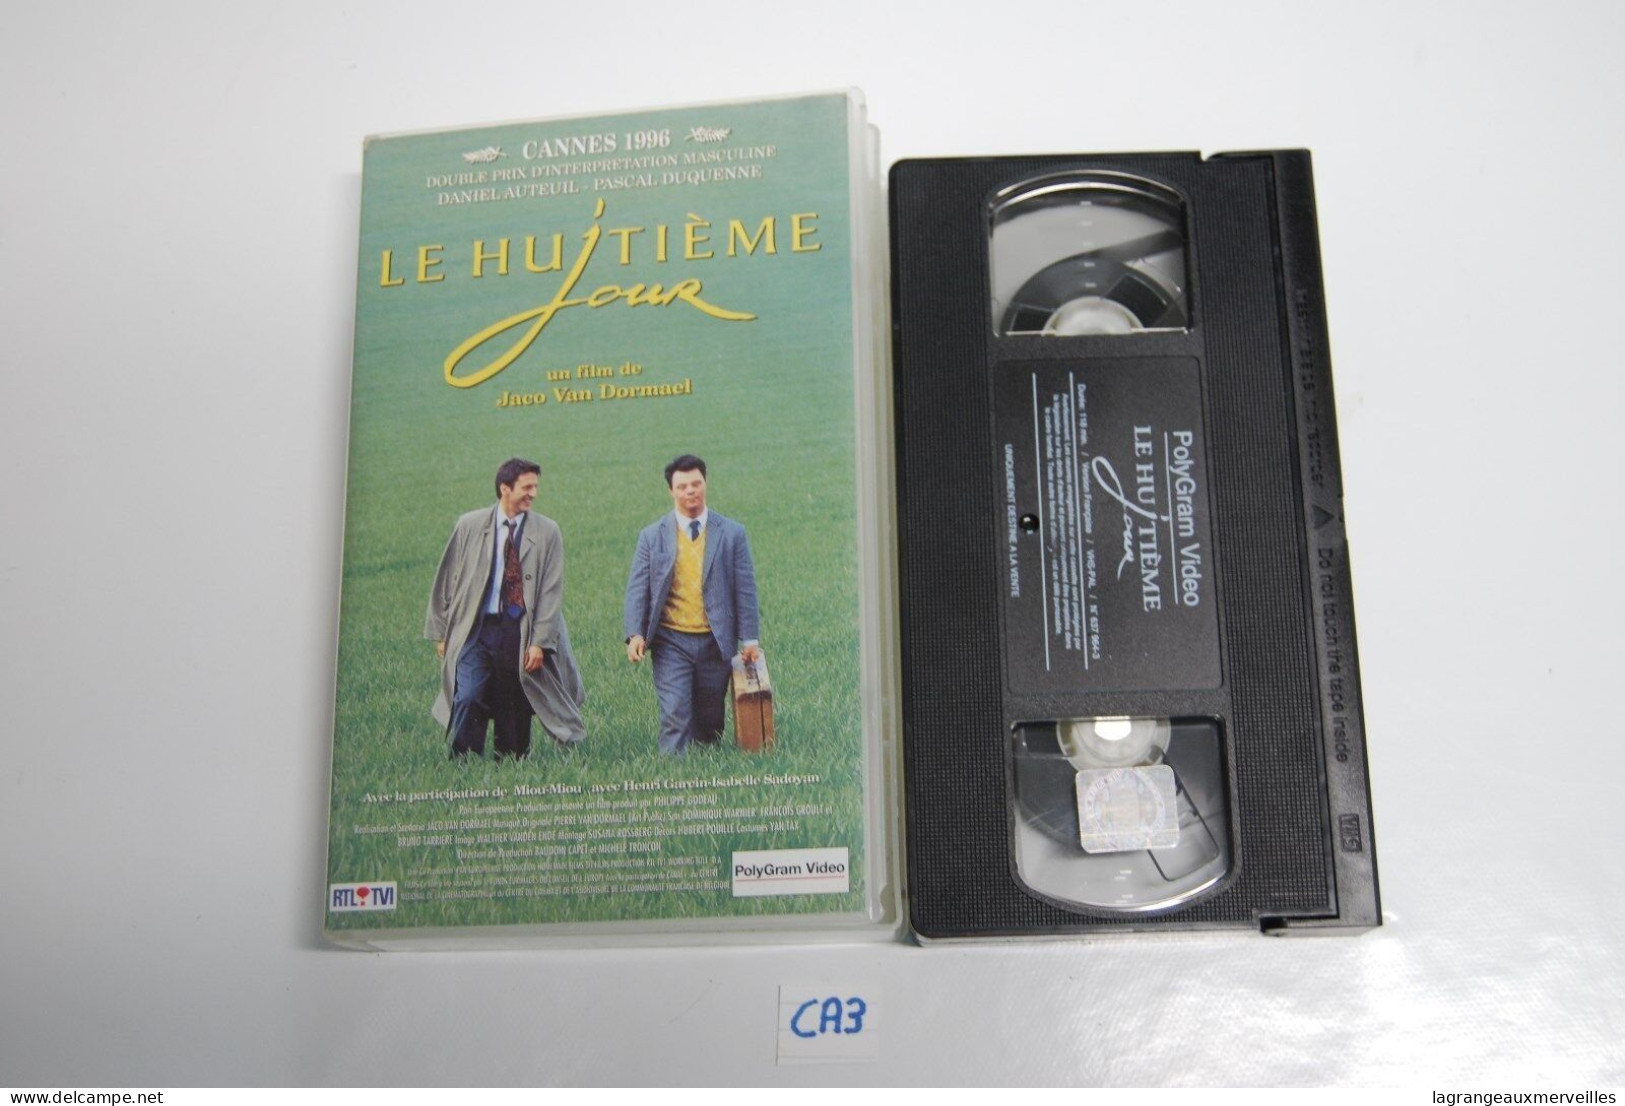 CA3 CASSETTE VIDEO VHS LE HUITI7ME JOUR - Dramma